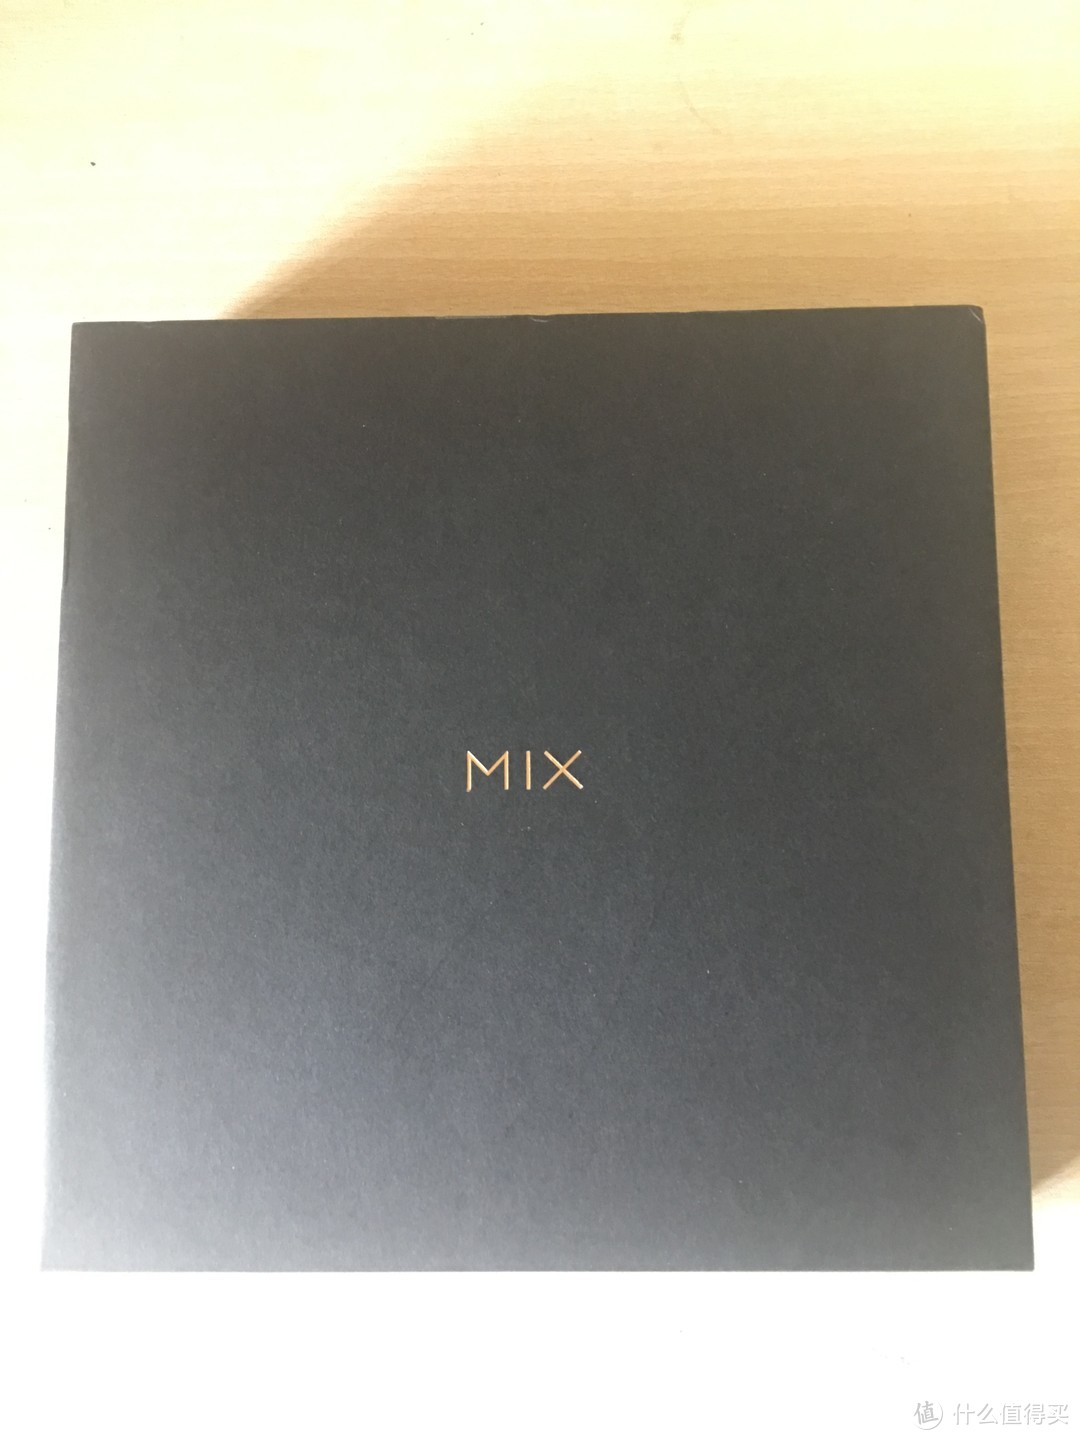 黑不溜秋的盒子，中间mix的logo